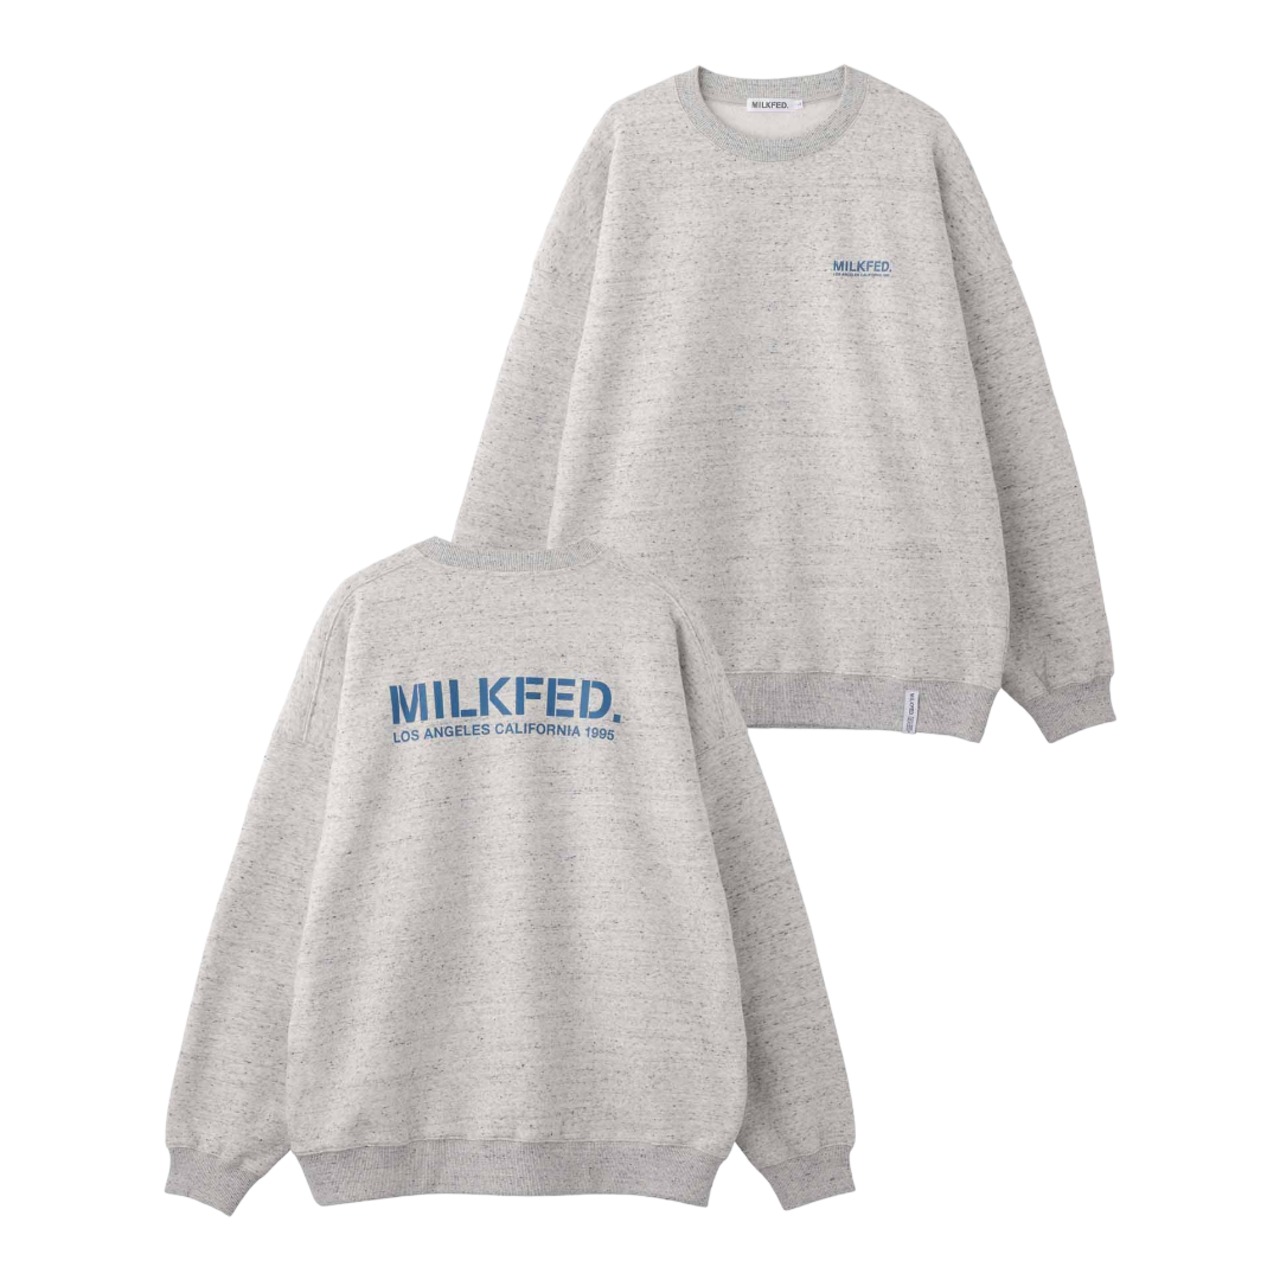 【MILKFED.】STENCIL SWEAT TOP 【ミルクフェド】